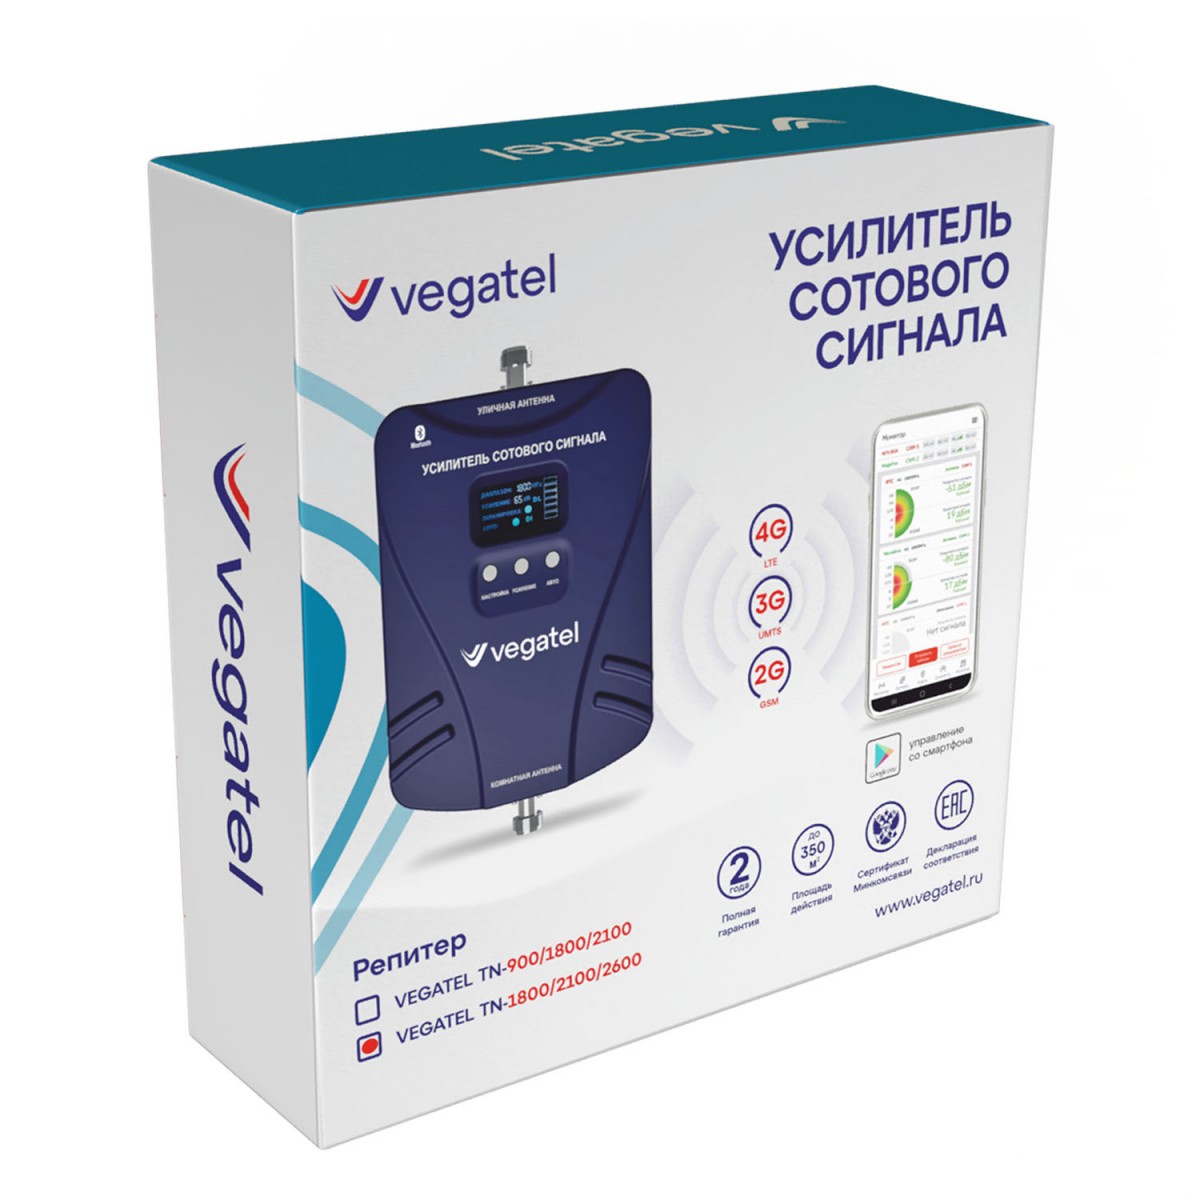 Детальное изображение товара "Комплект усиления сотовой связи Vegatel TN-1800/2100/2600" из каталога оборудования Антенна76